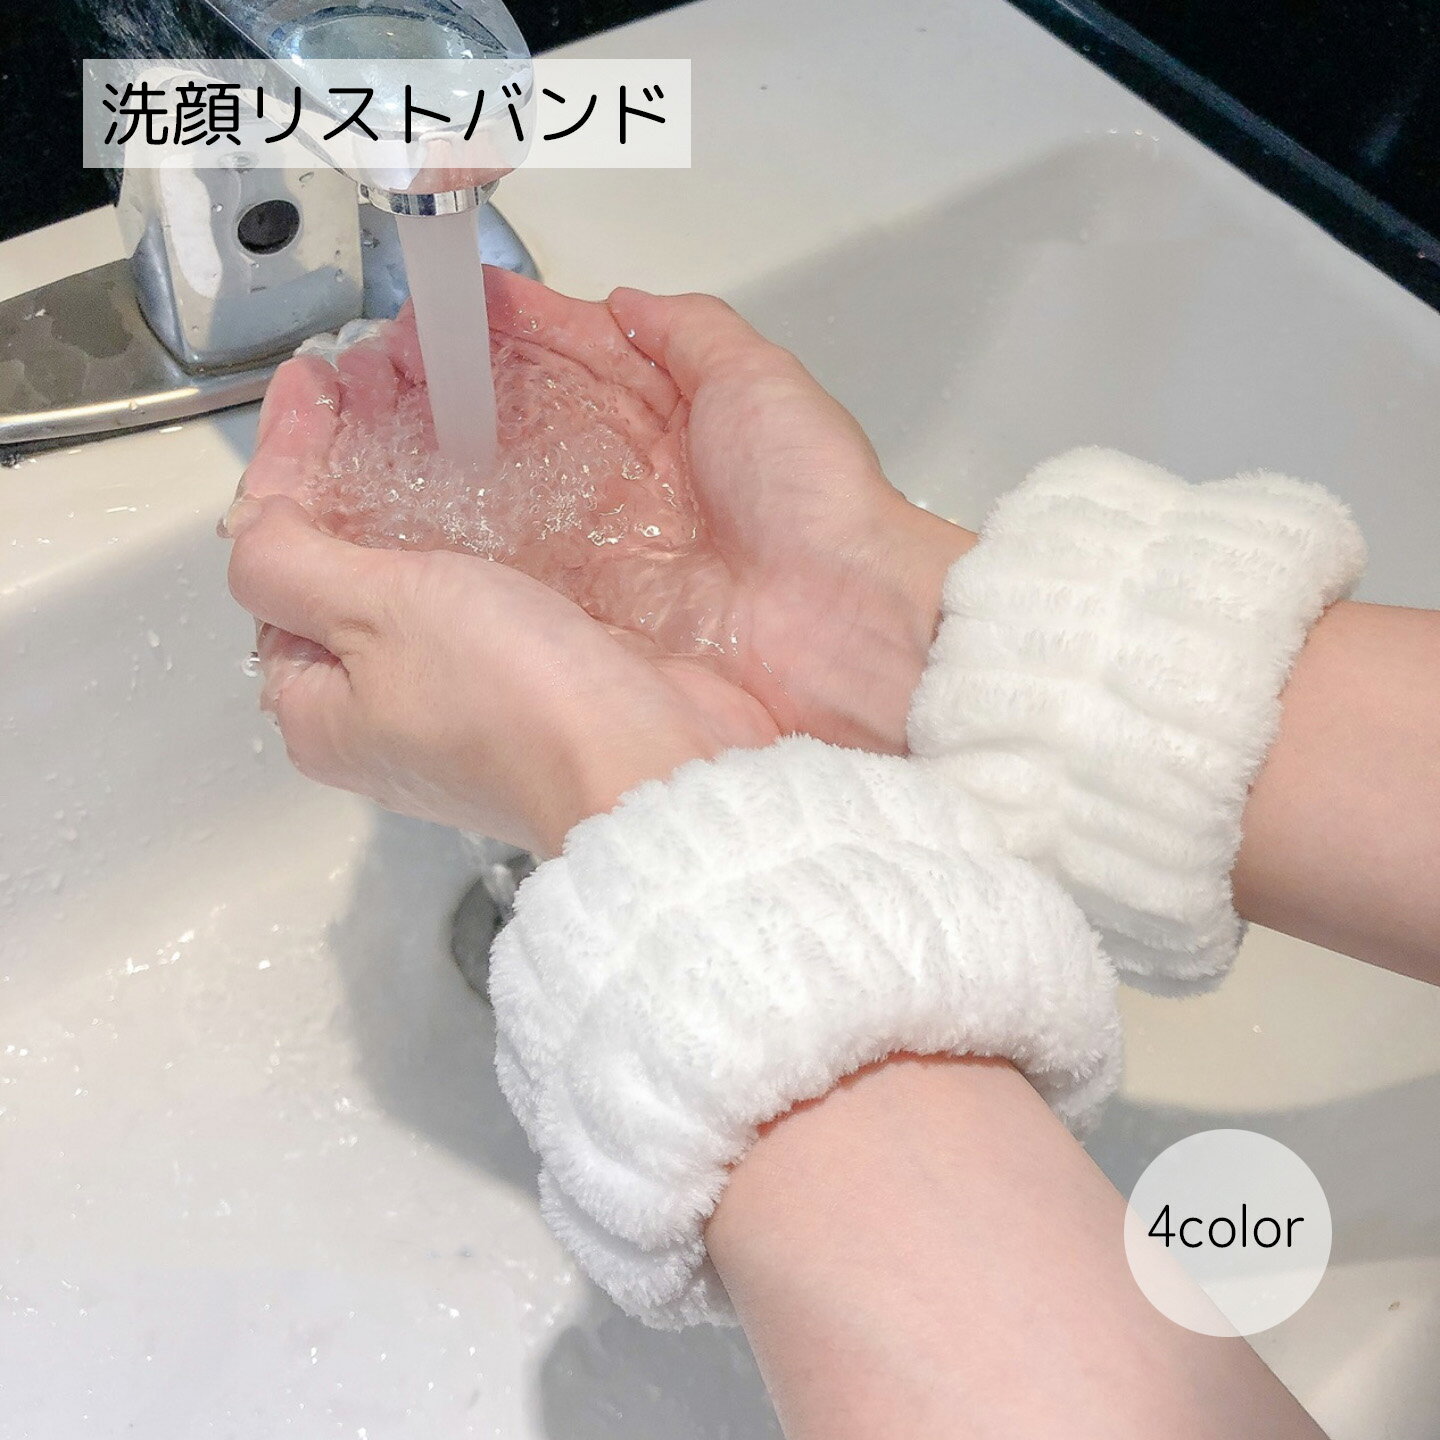 送料無料 洗顔リストバンド 洗顔用品 ホワイト ピンク ブルー 便利グッズ シンプル かわいい 水濡れ防止 ふわふわ